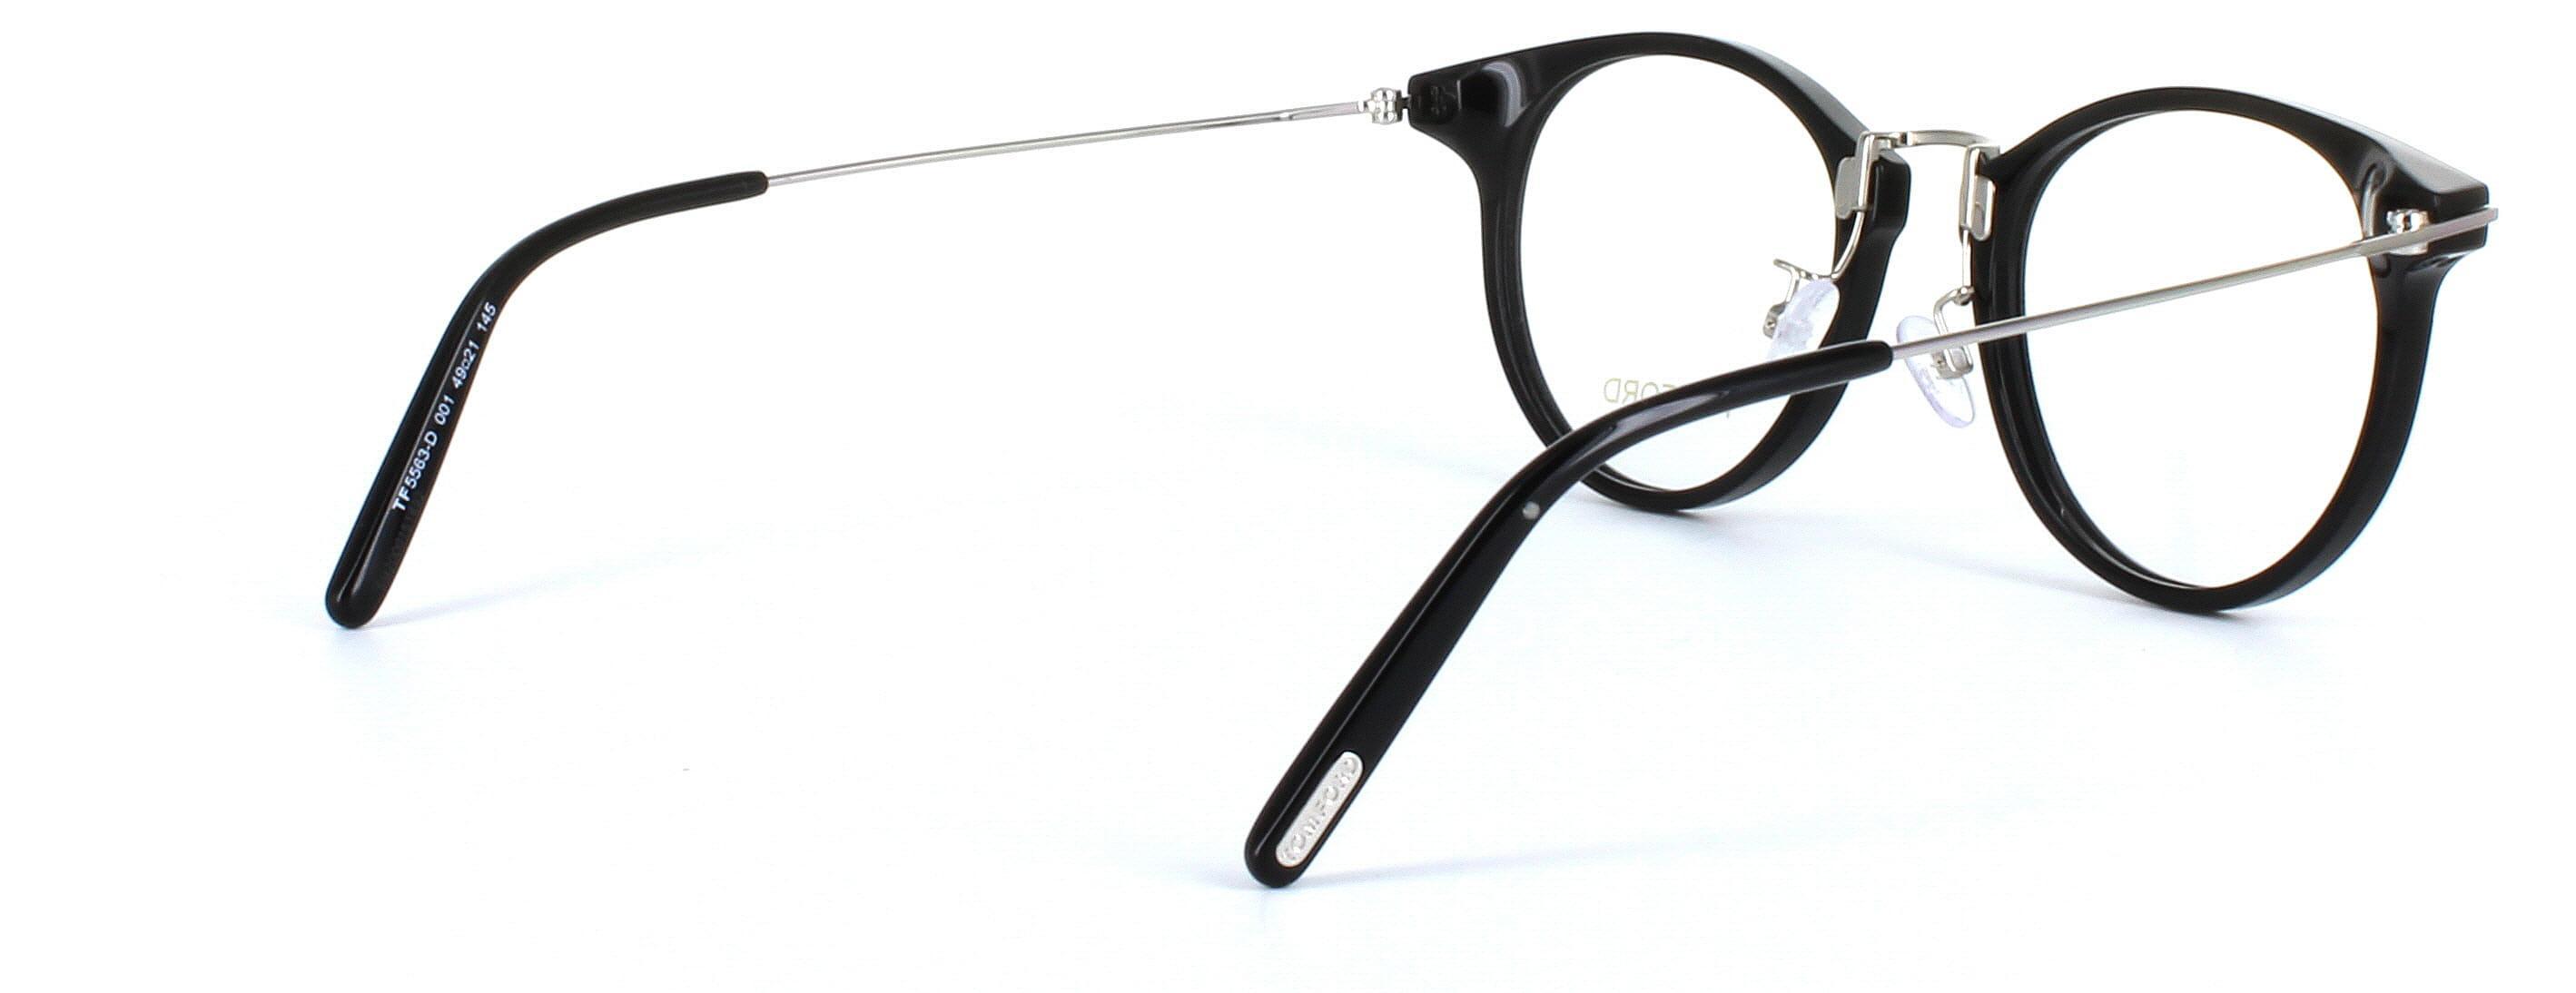 Tom Ford Glasses - FT5563 - Black - Image 4